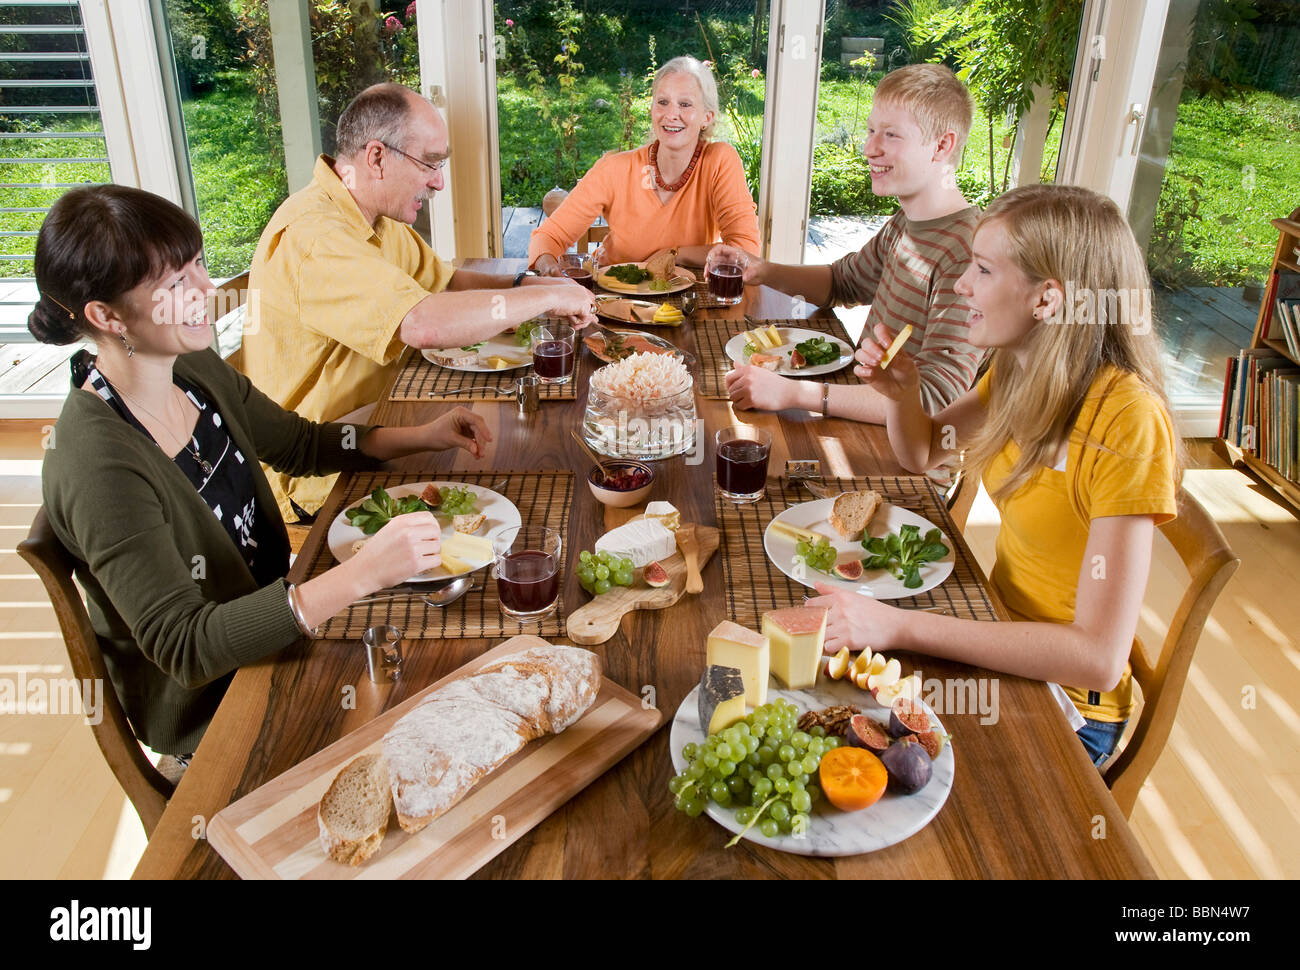 Swiss family enjoying Sunday Brunch together Stock Photo